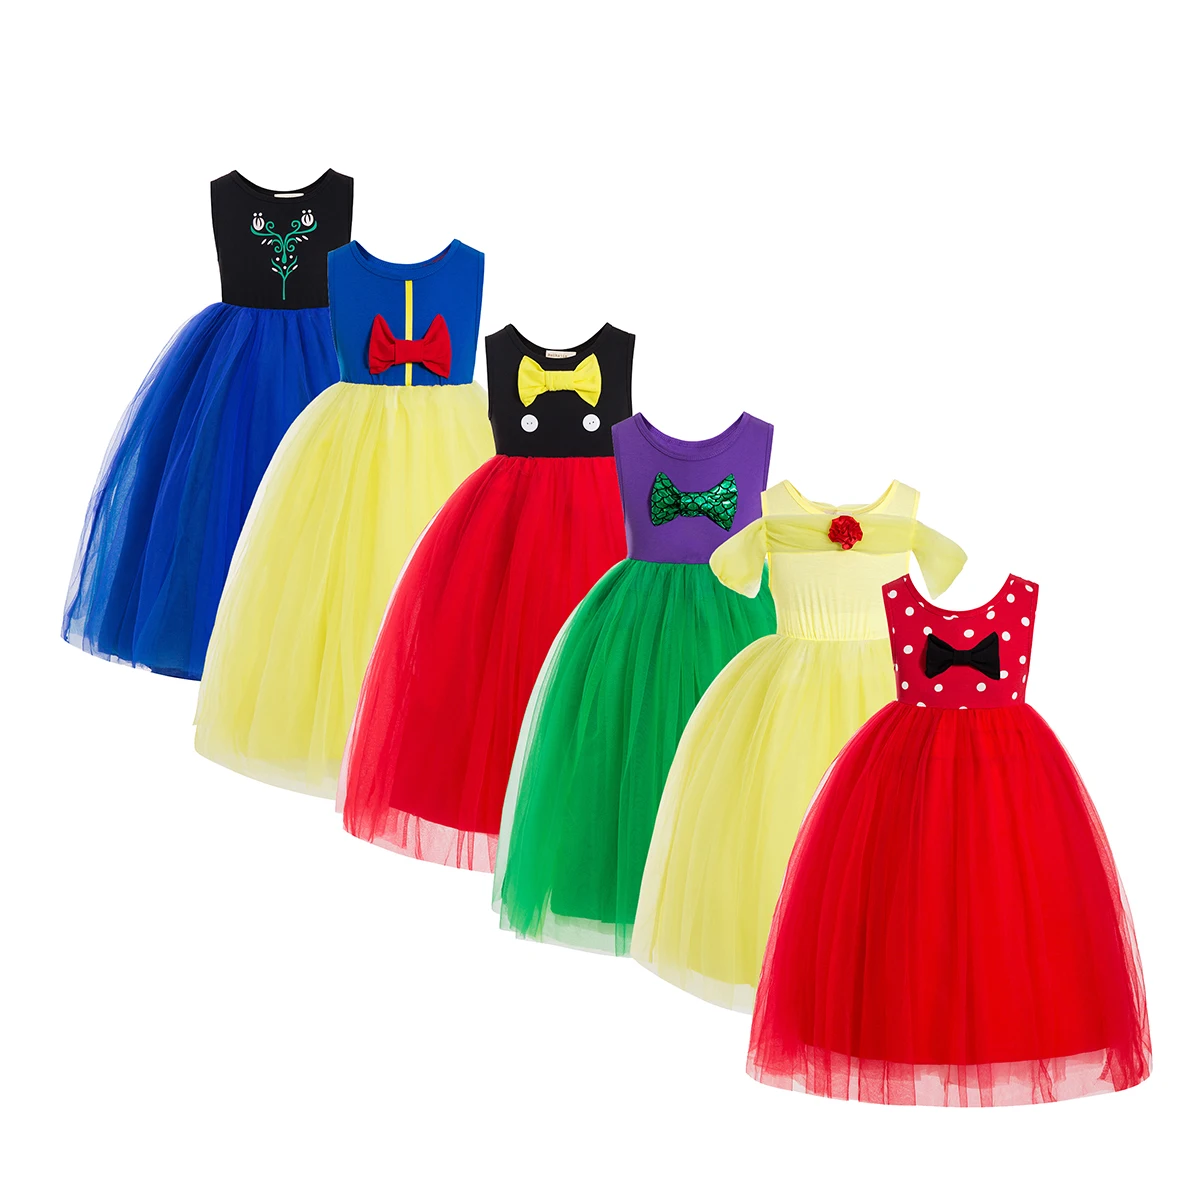 Trendy Belle Tutu Dress For Kids